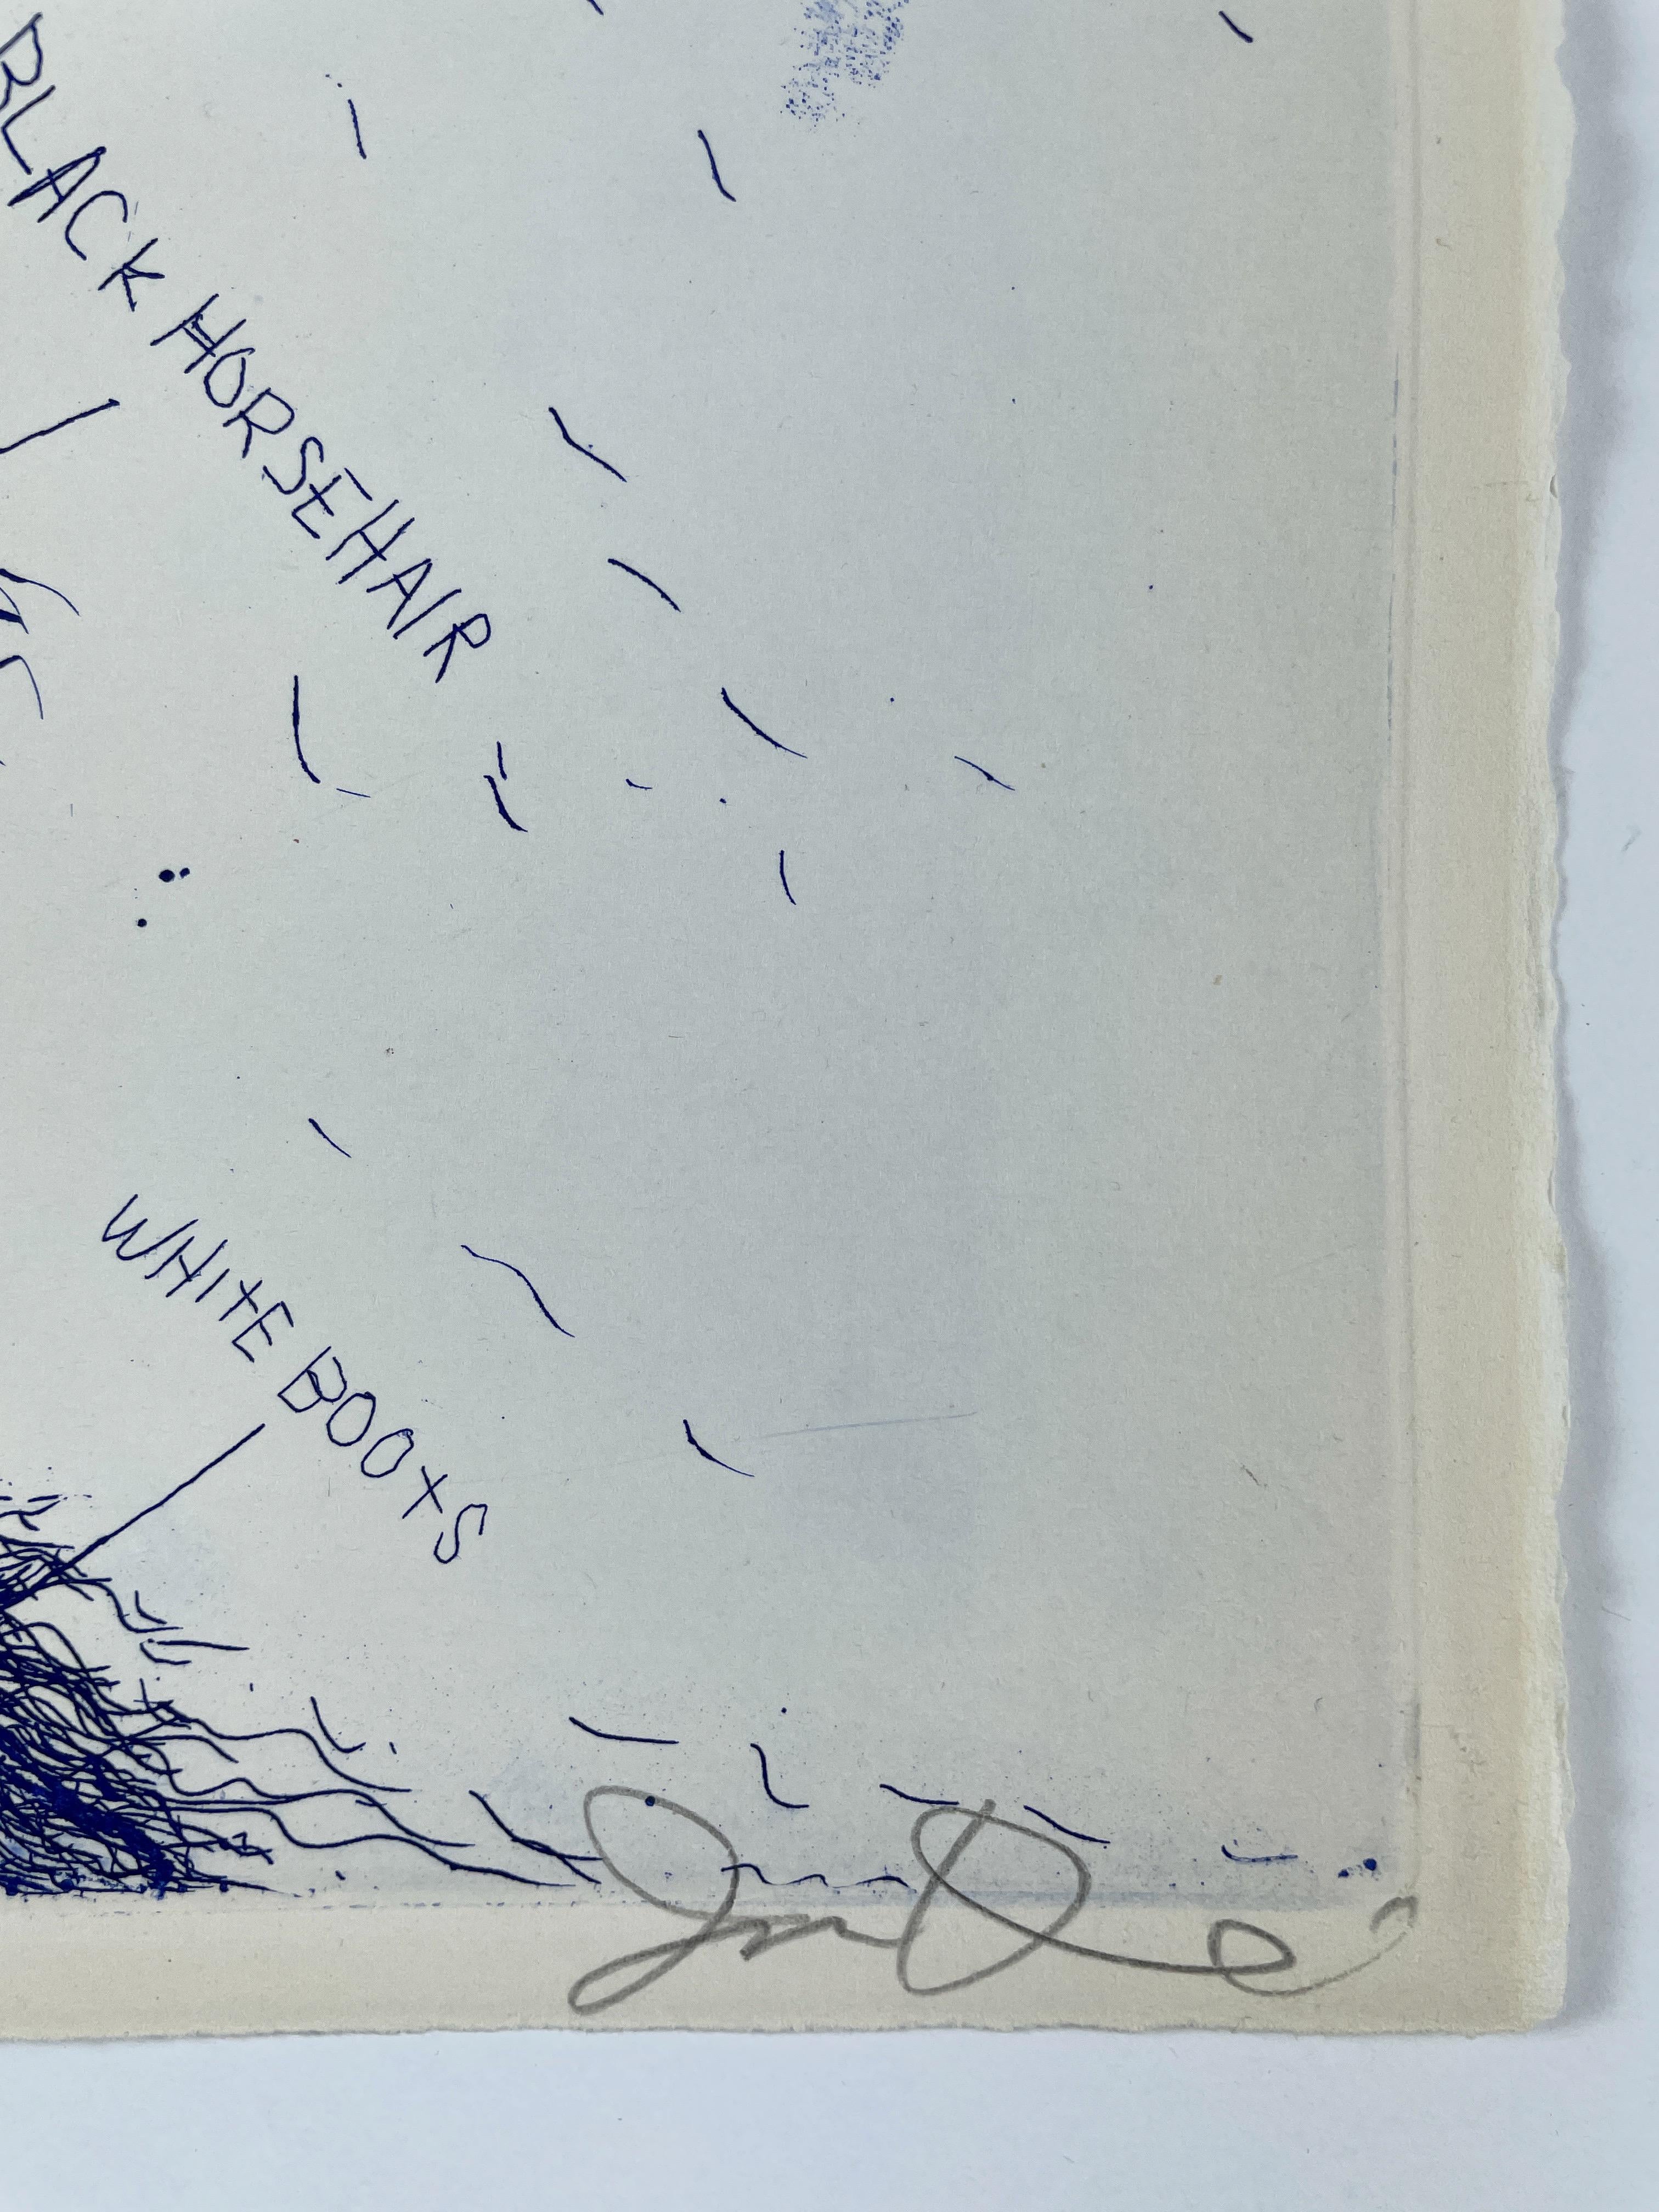 Ce portrait à l'eau-forte surréaliste de Dorian Gray par Jim Dine à l'encre bleue représente le protagoniste littéraire vêtu d'un costume blanc. Son visage est masqué par une masse de cheveux, dont des touffes semblent pousser sur les manches, les